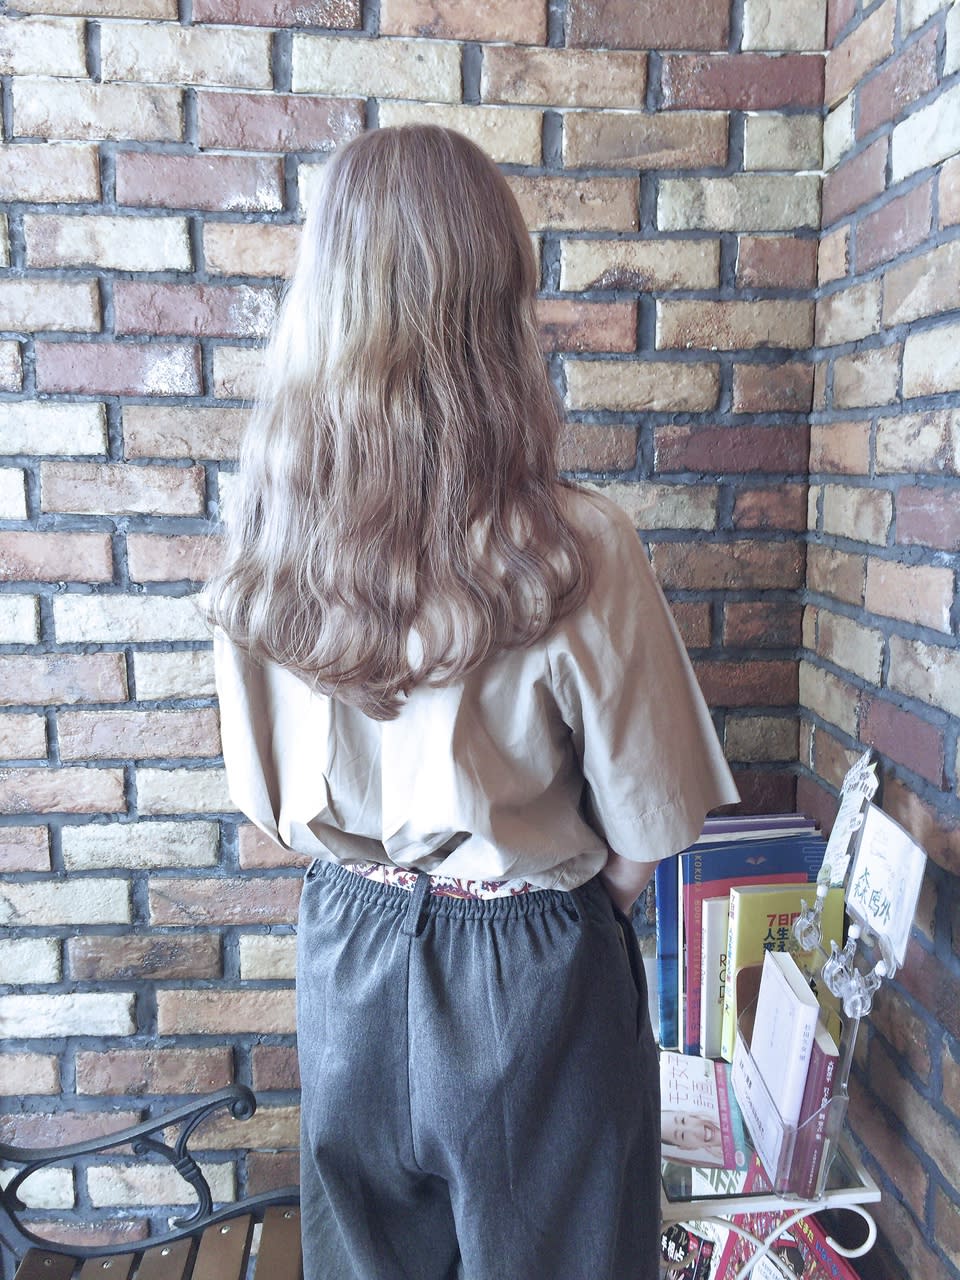 Bon Male hair【ボンマールヘアー】のスタイル紹介。ミルキーアップル☆